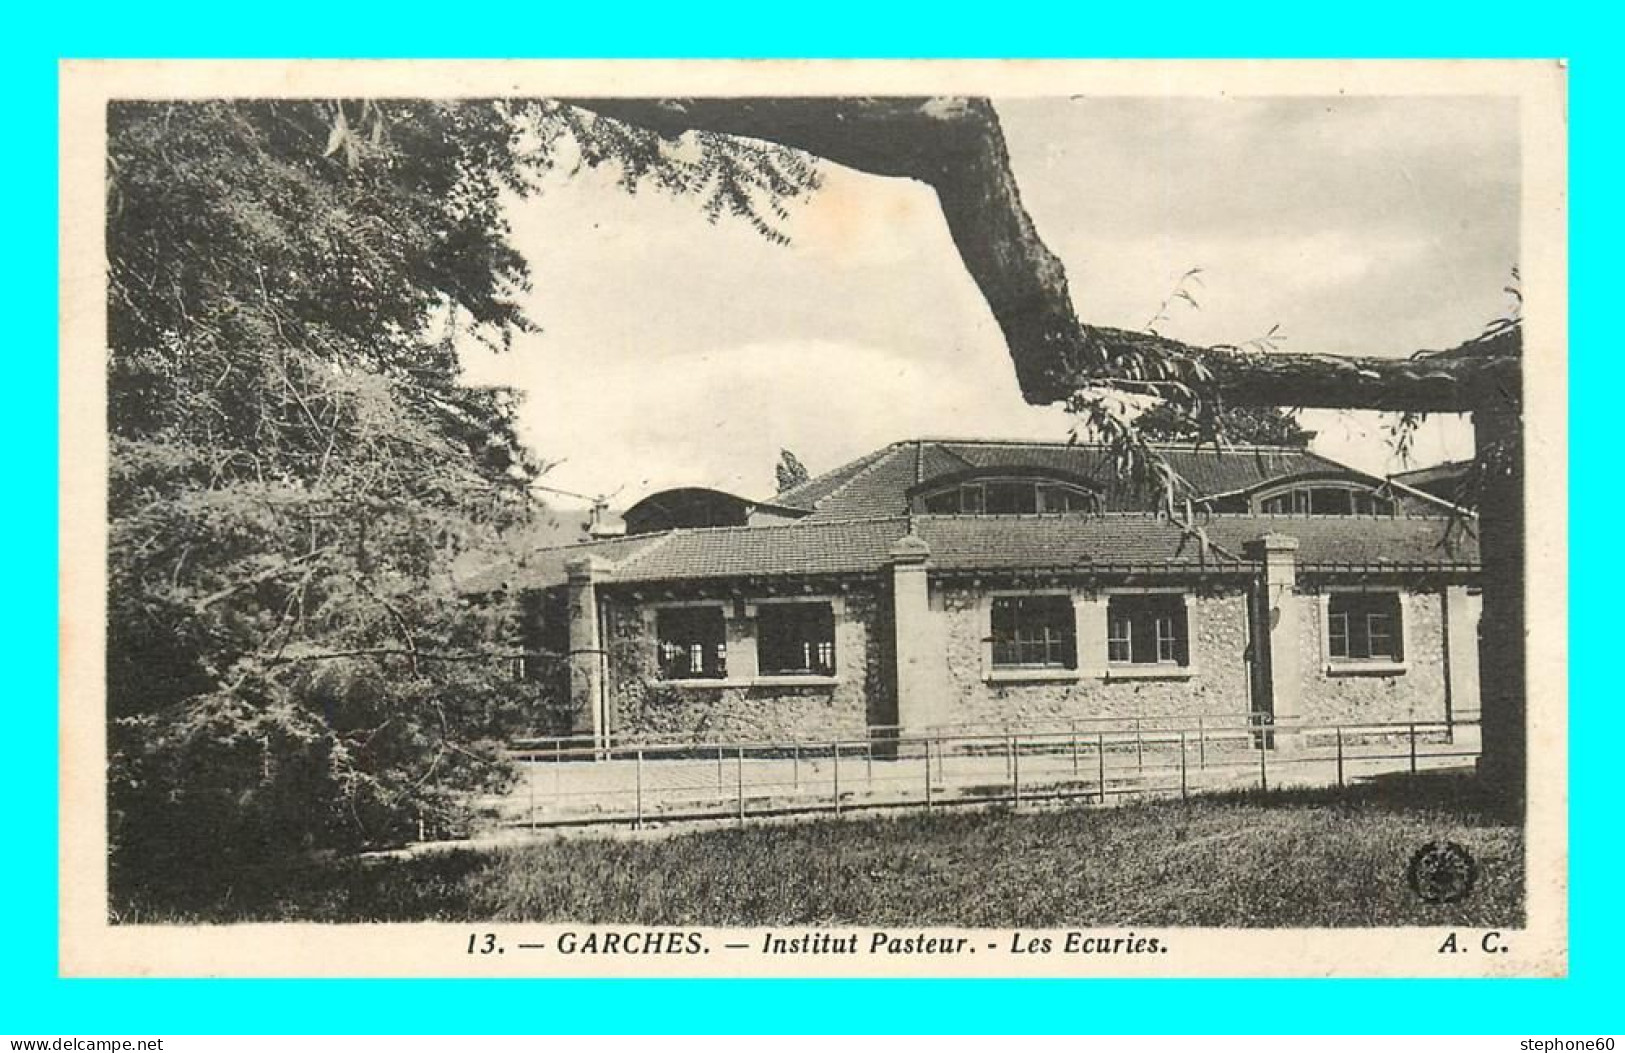 A780 / 139 92 - GARCHES Institut Pasteur Ecuries - Garches